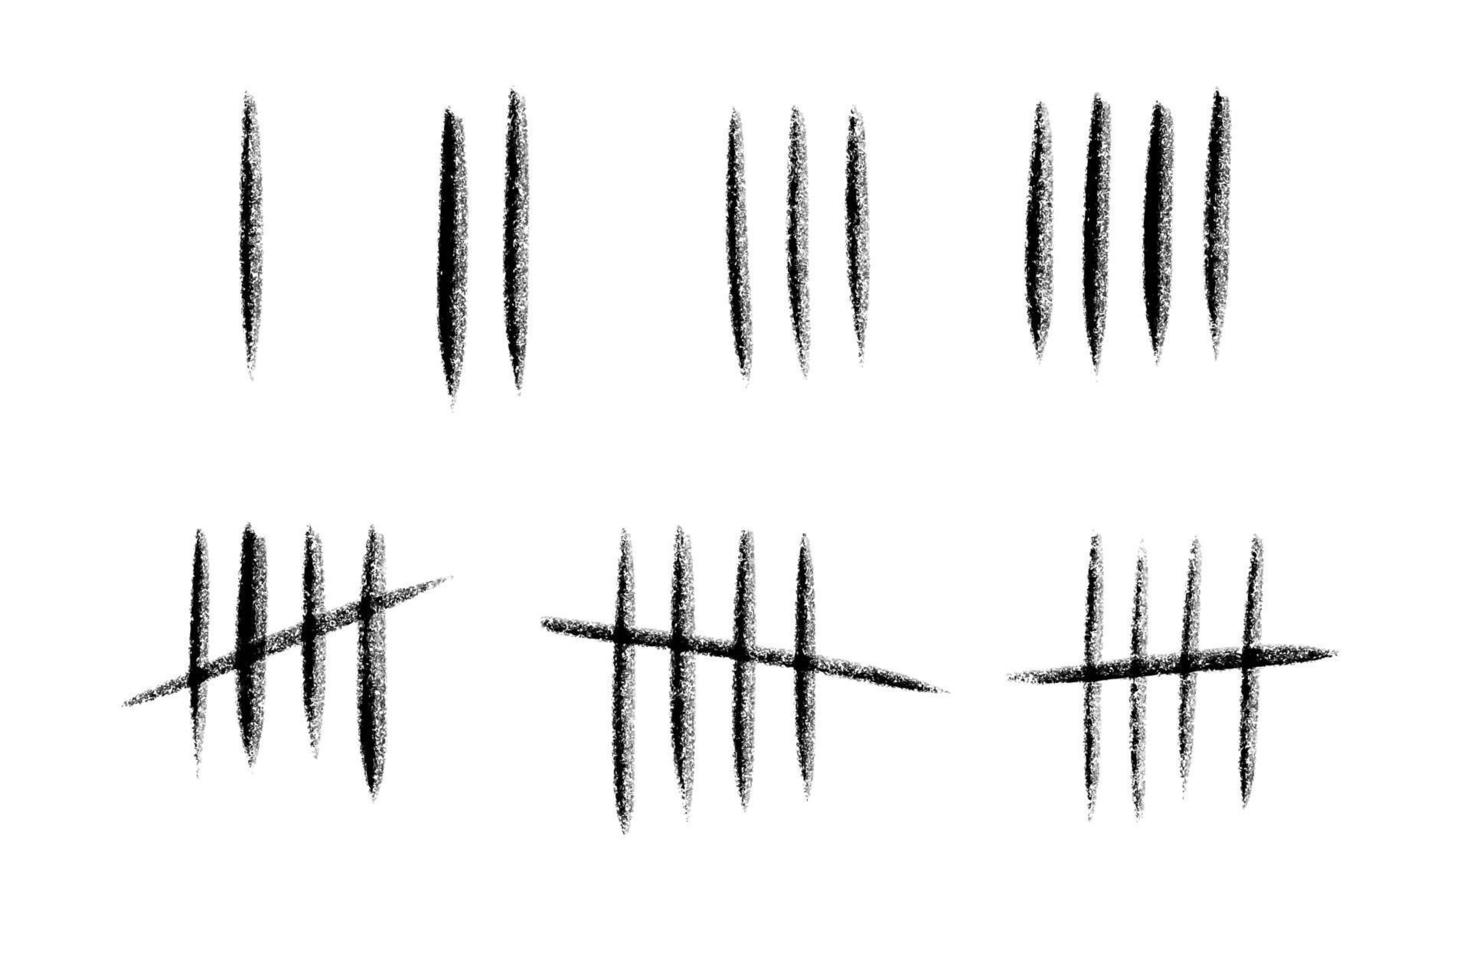 tally Mark aantal lijnen Aan de muur. hand- getrokken stokjes voor tellen tijd in gevangenis. vector illustratie ontwerp set.